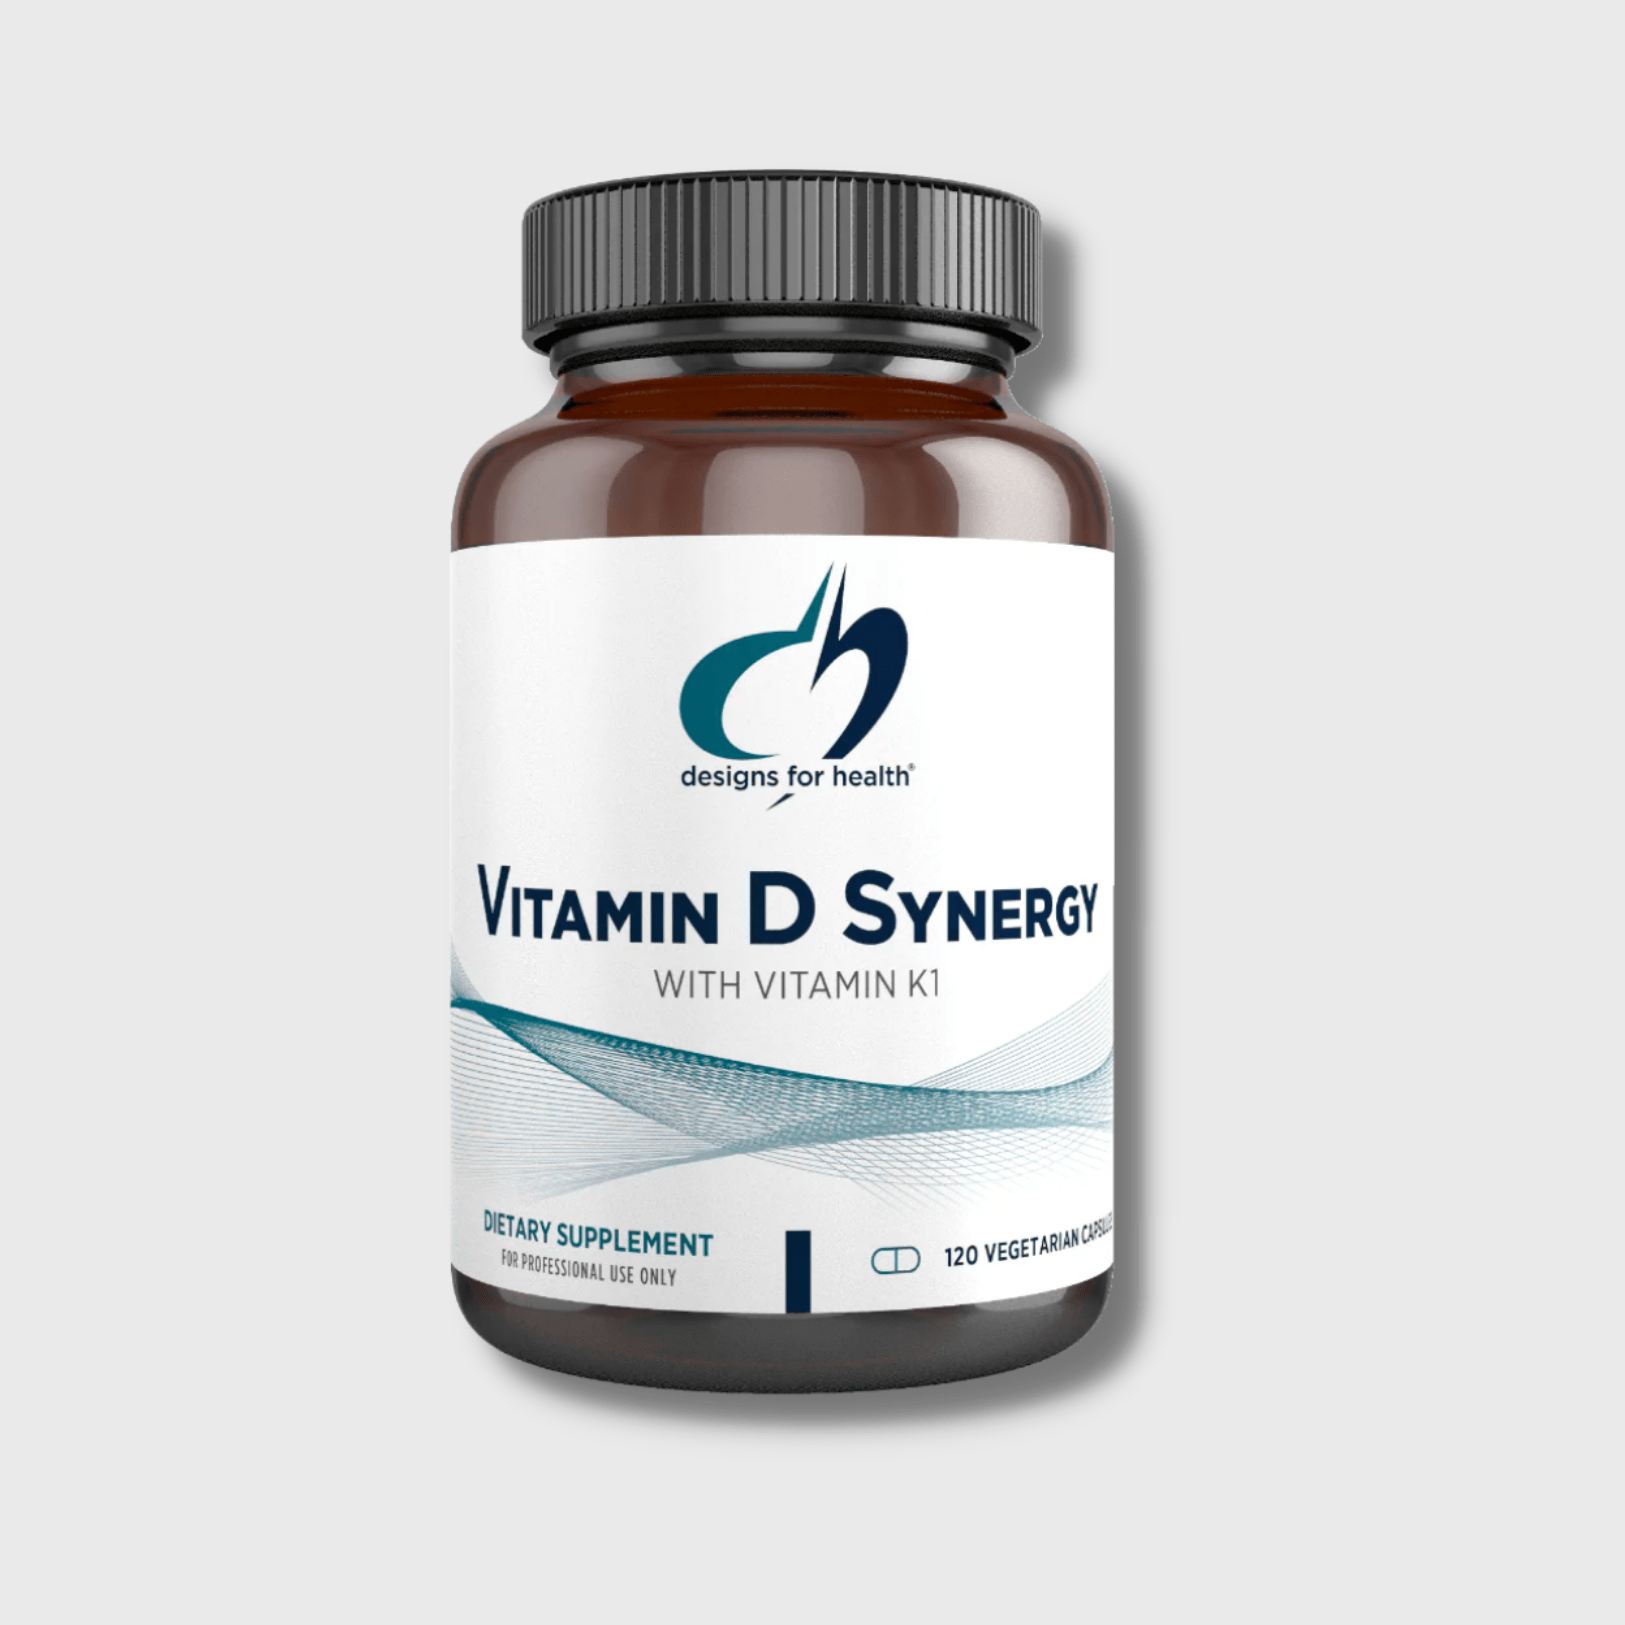 Vitamin D Synergy with Vitamin K1